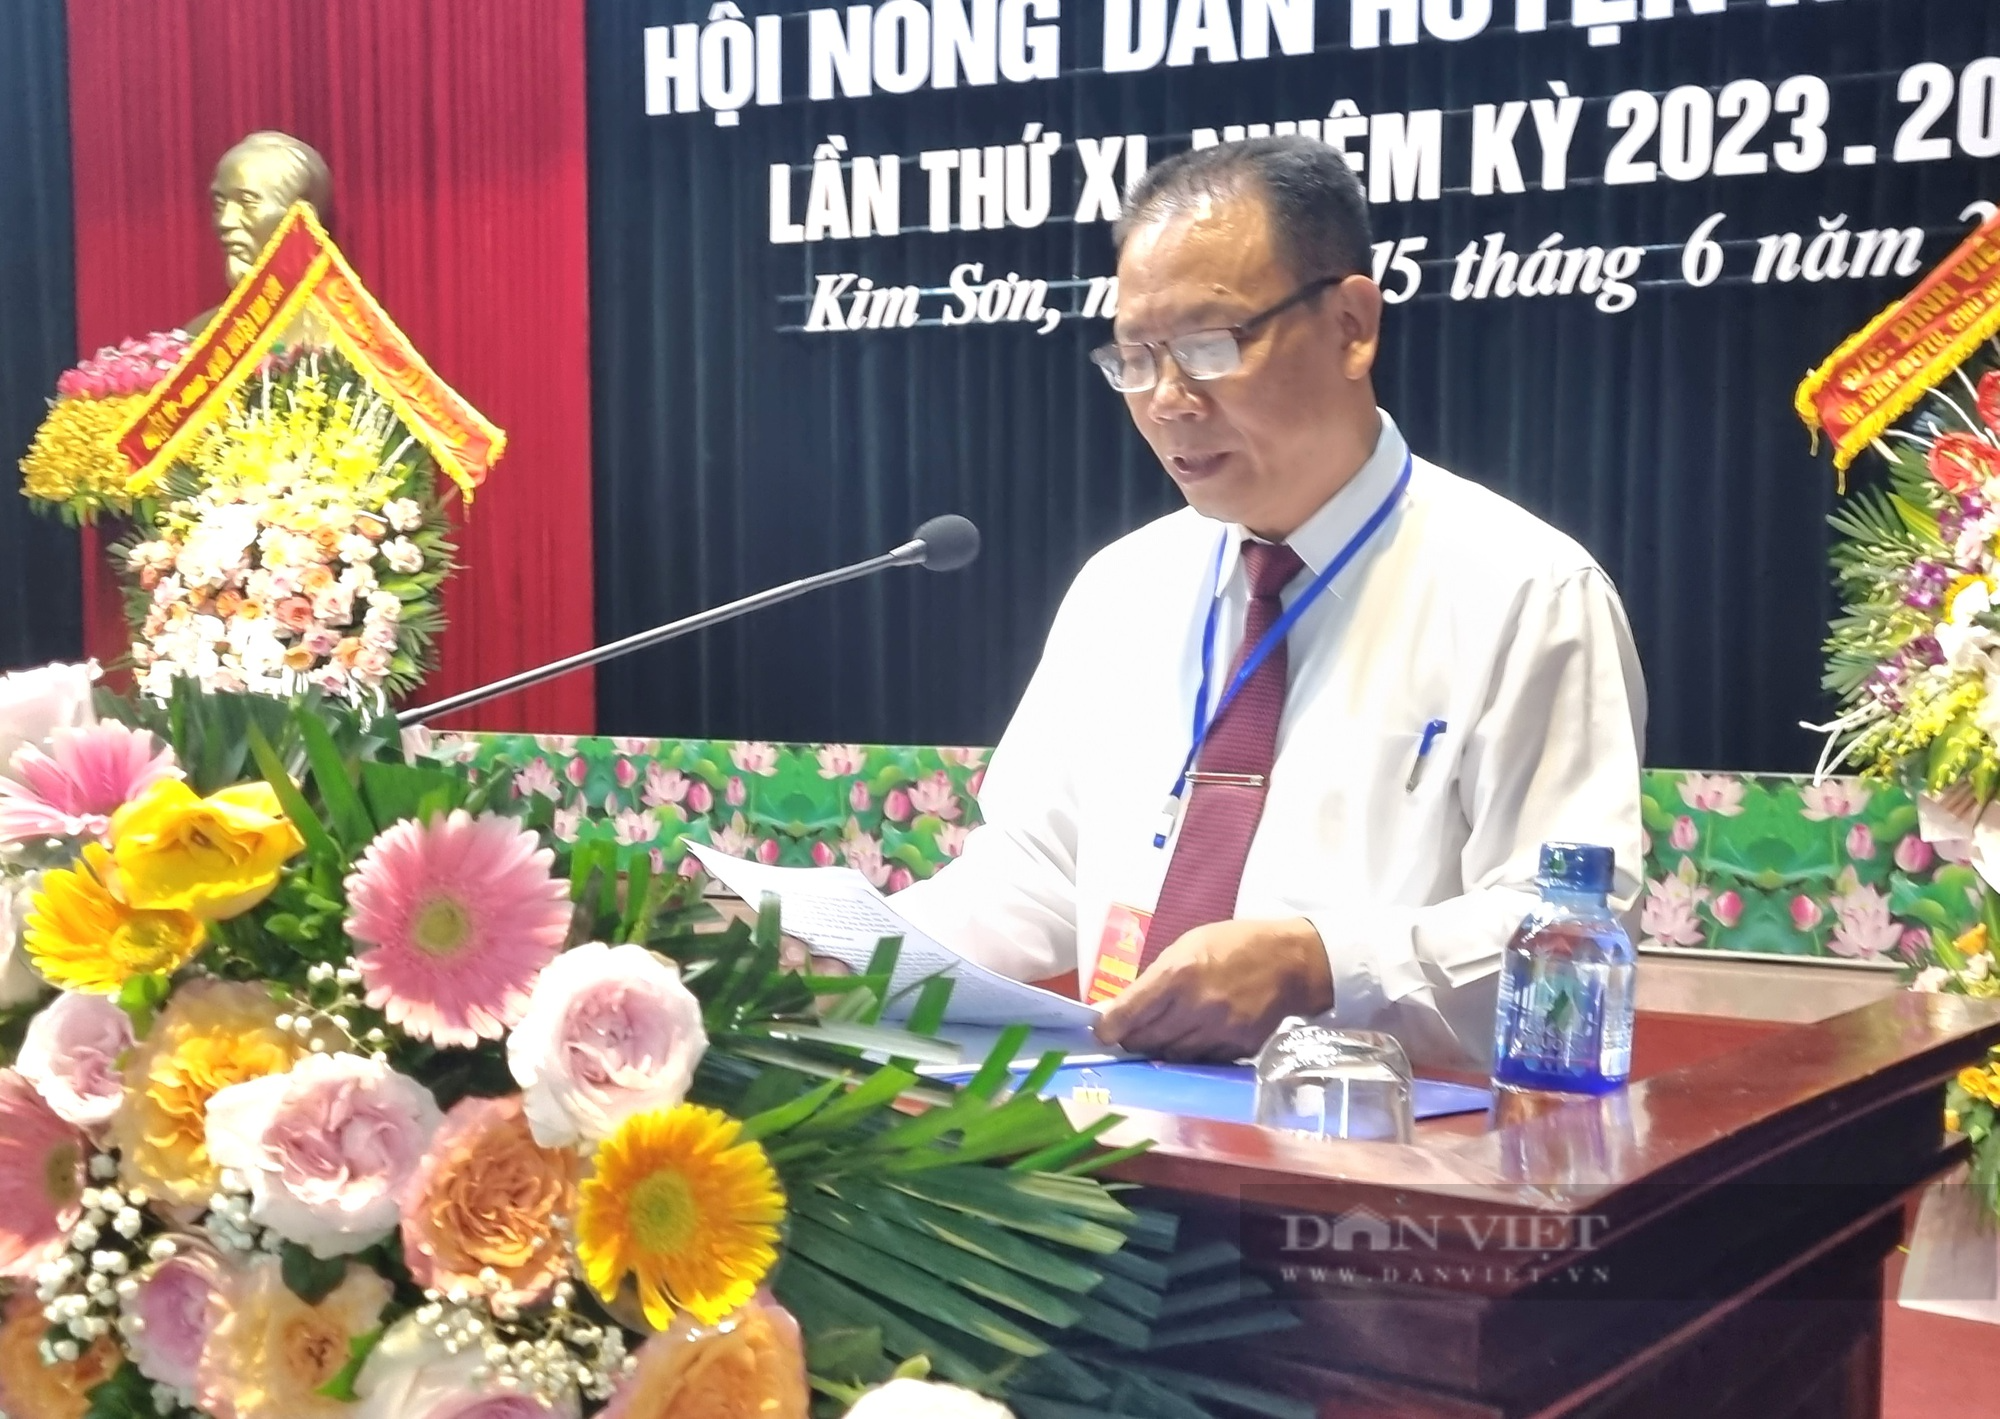 Ông Vũ Duy Tùng tái đắc cử Chủ tịch Hội Nông dân huyện Kim Sơn - Ảnh 8.